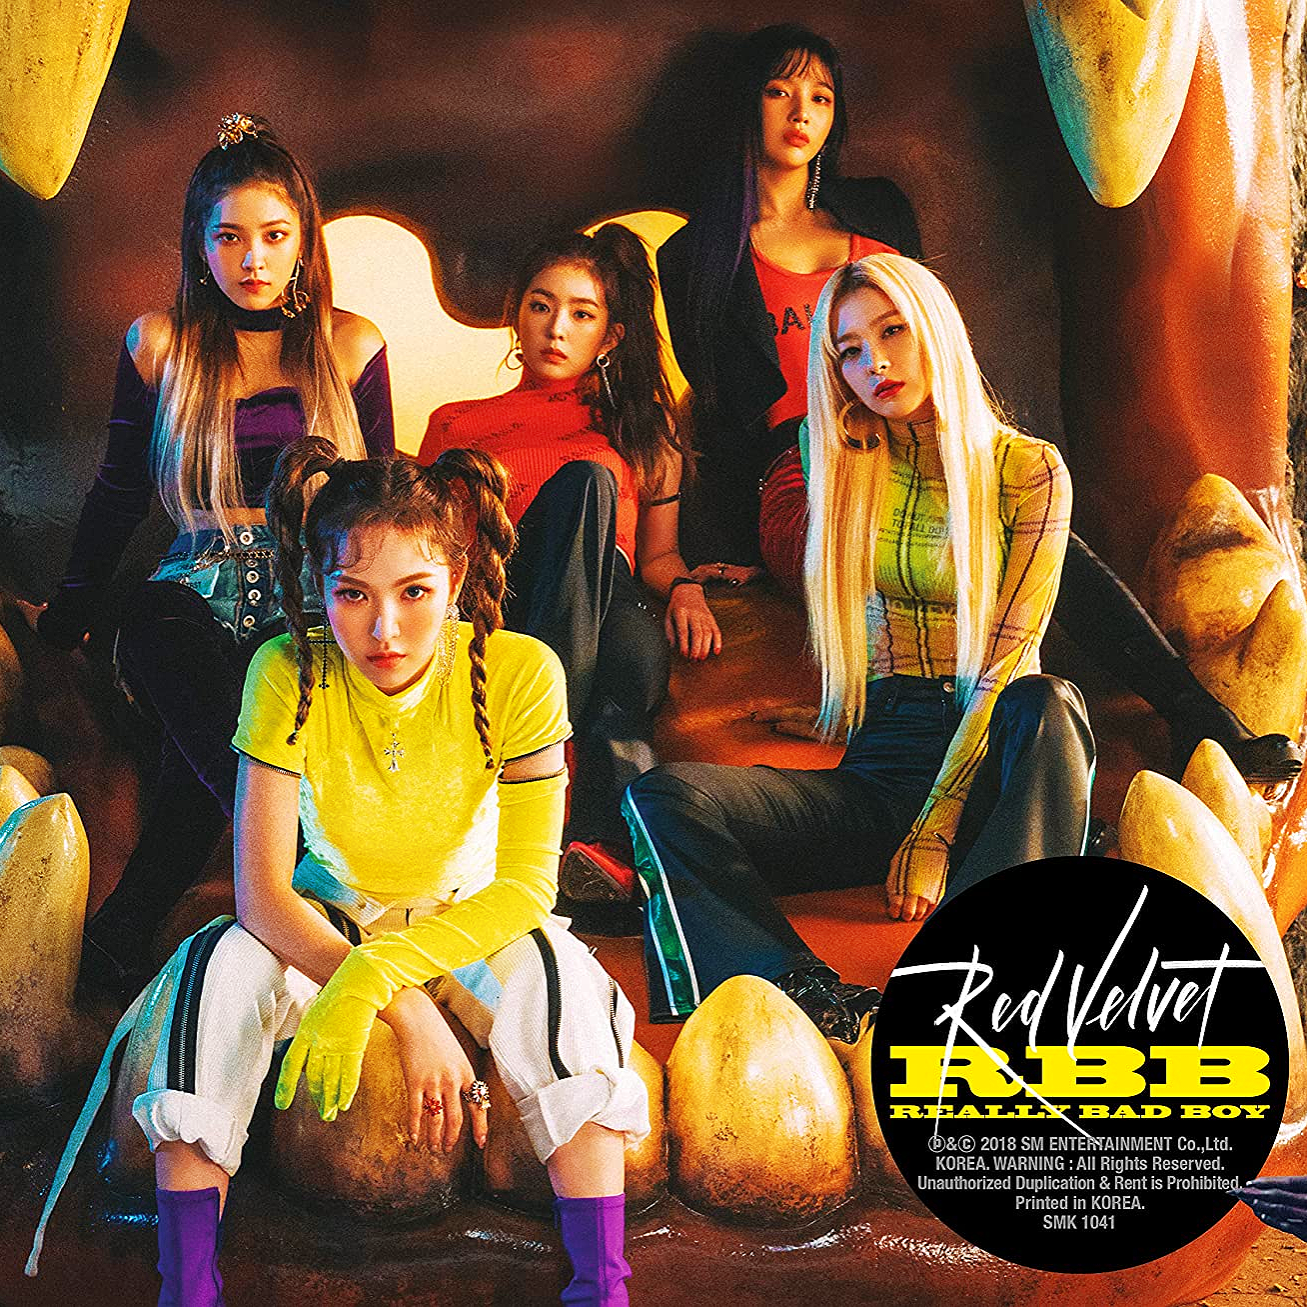 Red Velvet RBB cover artwork